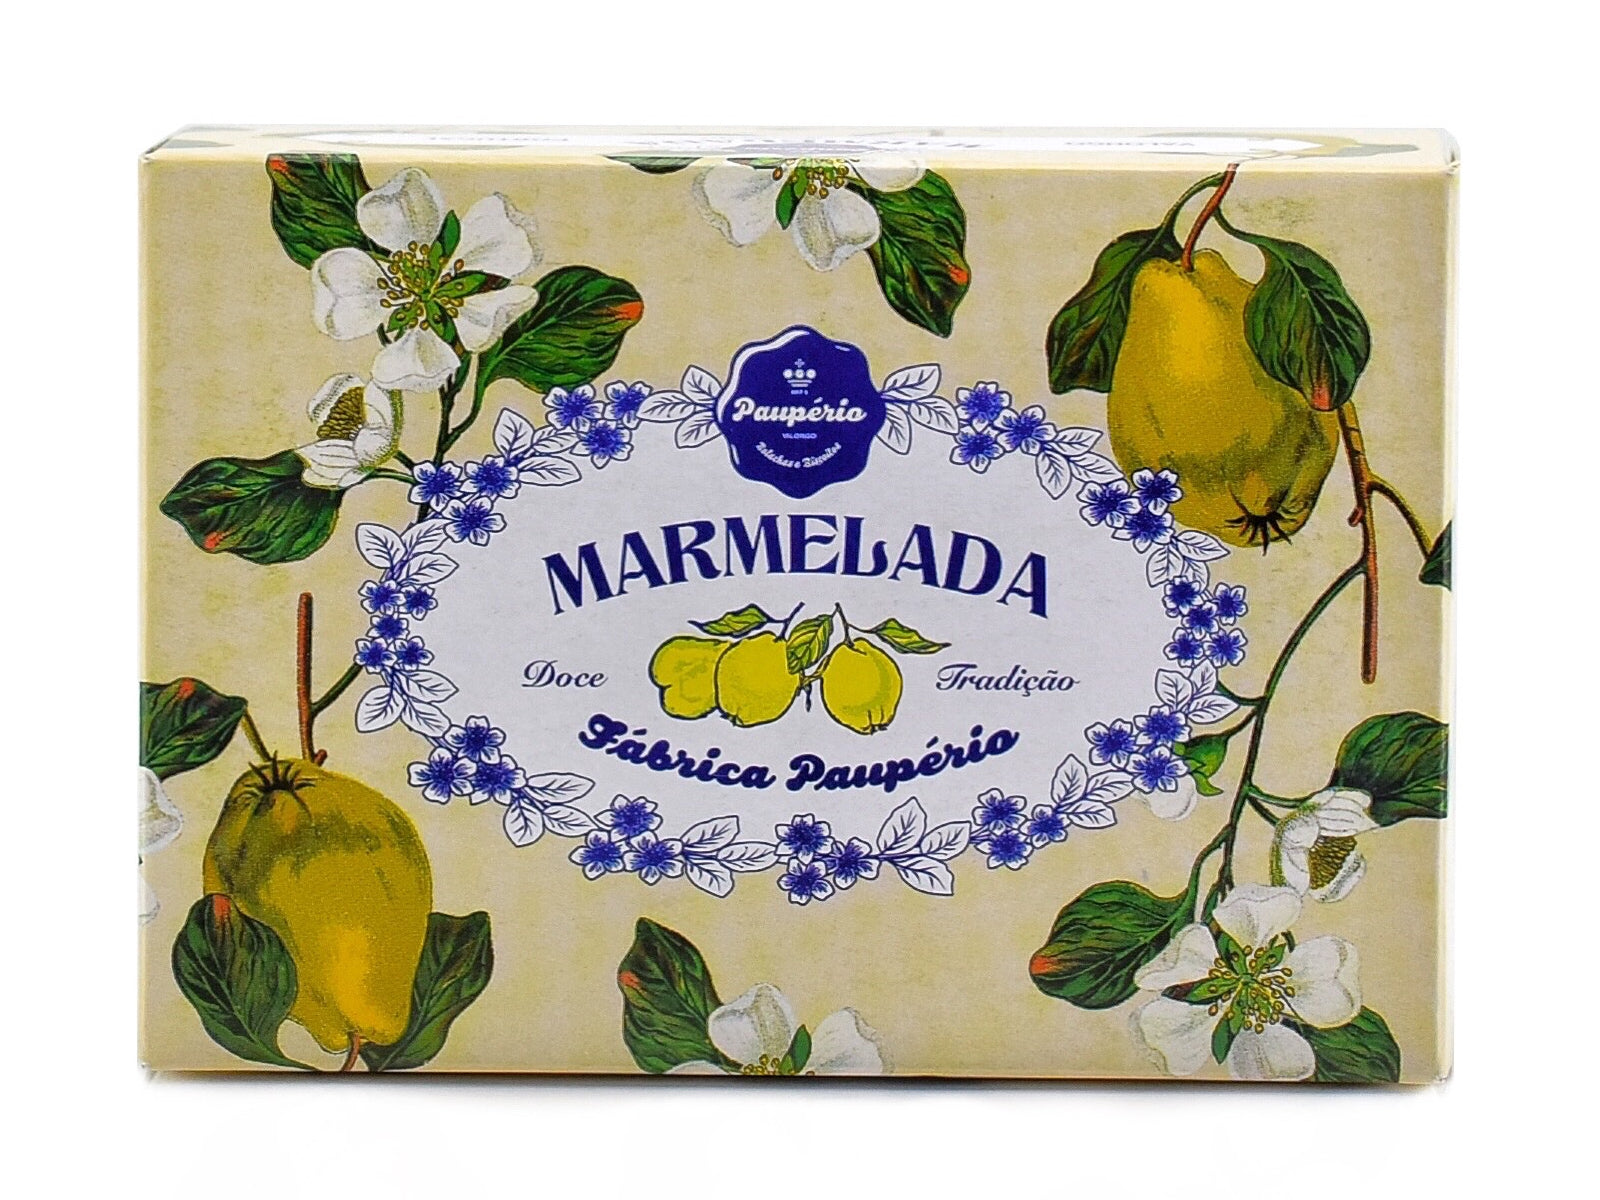 Marmelada Paupério